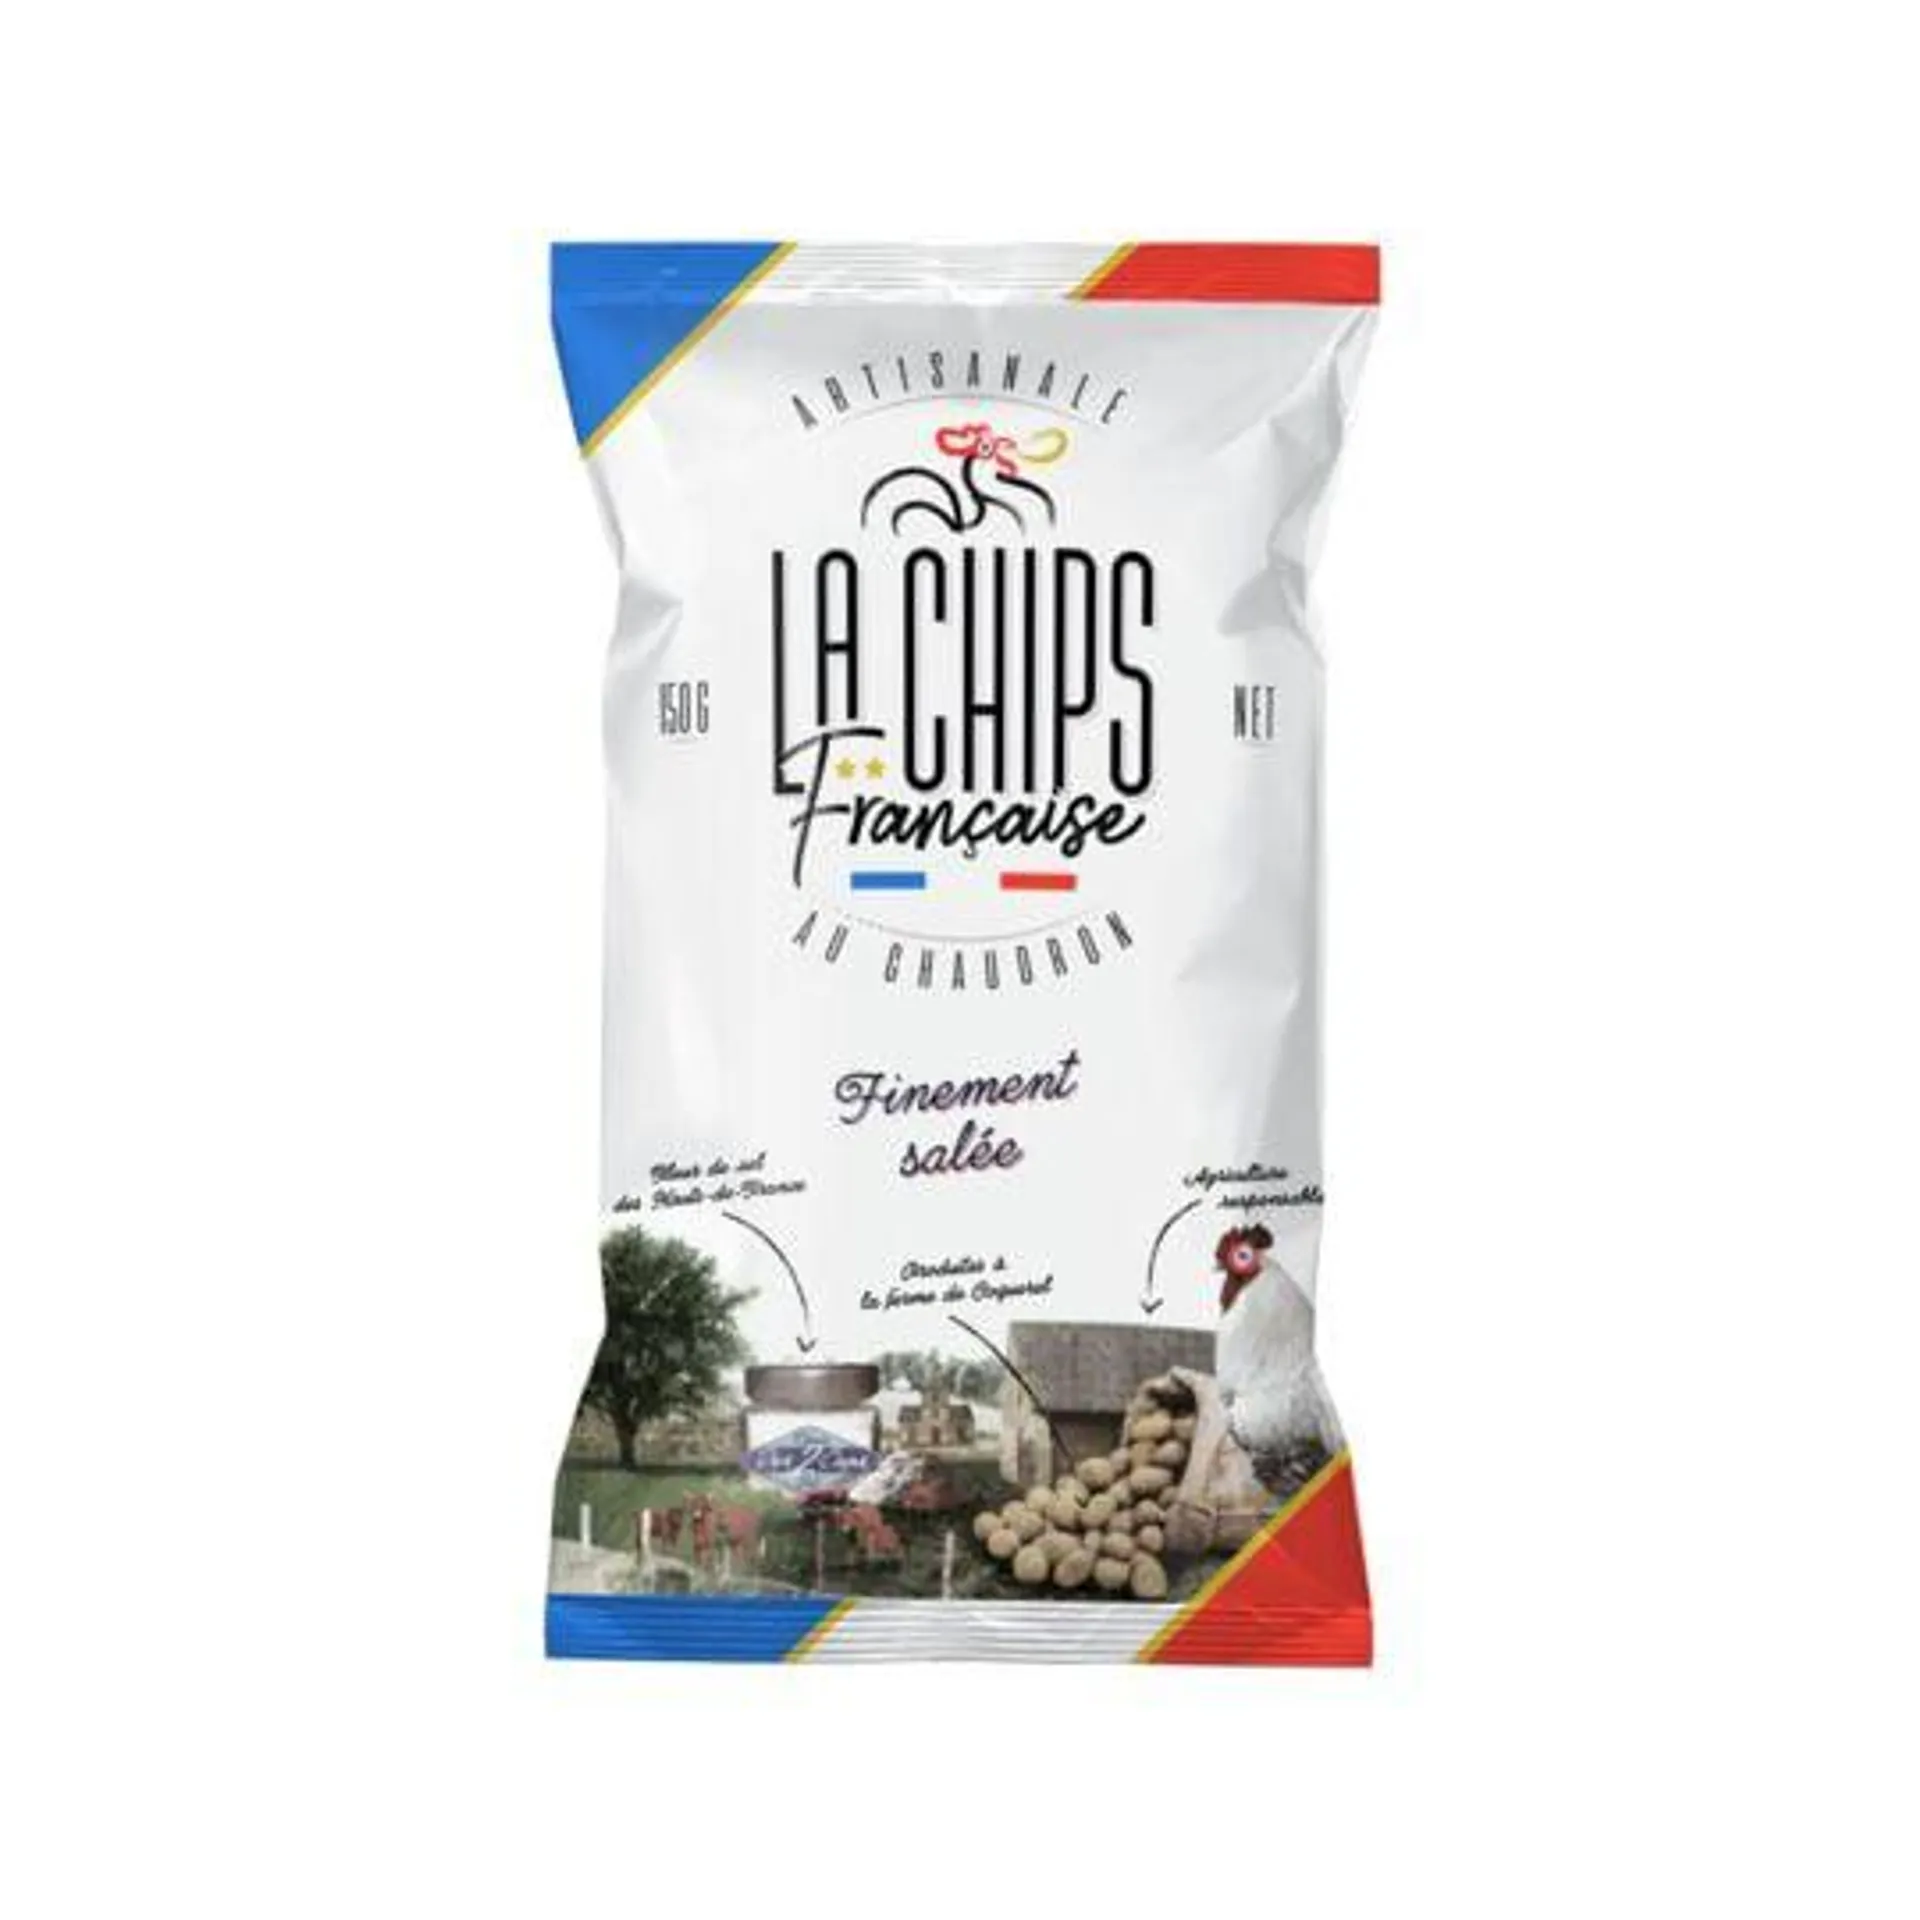 Chips finement salée LA FRANCAISE